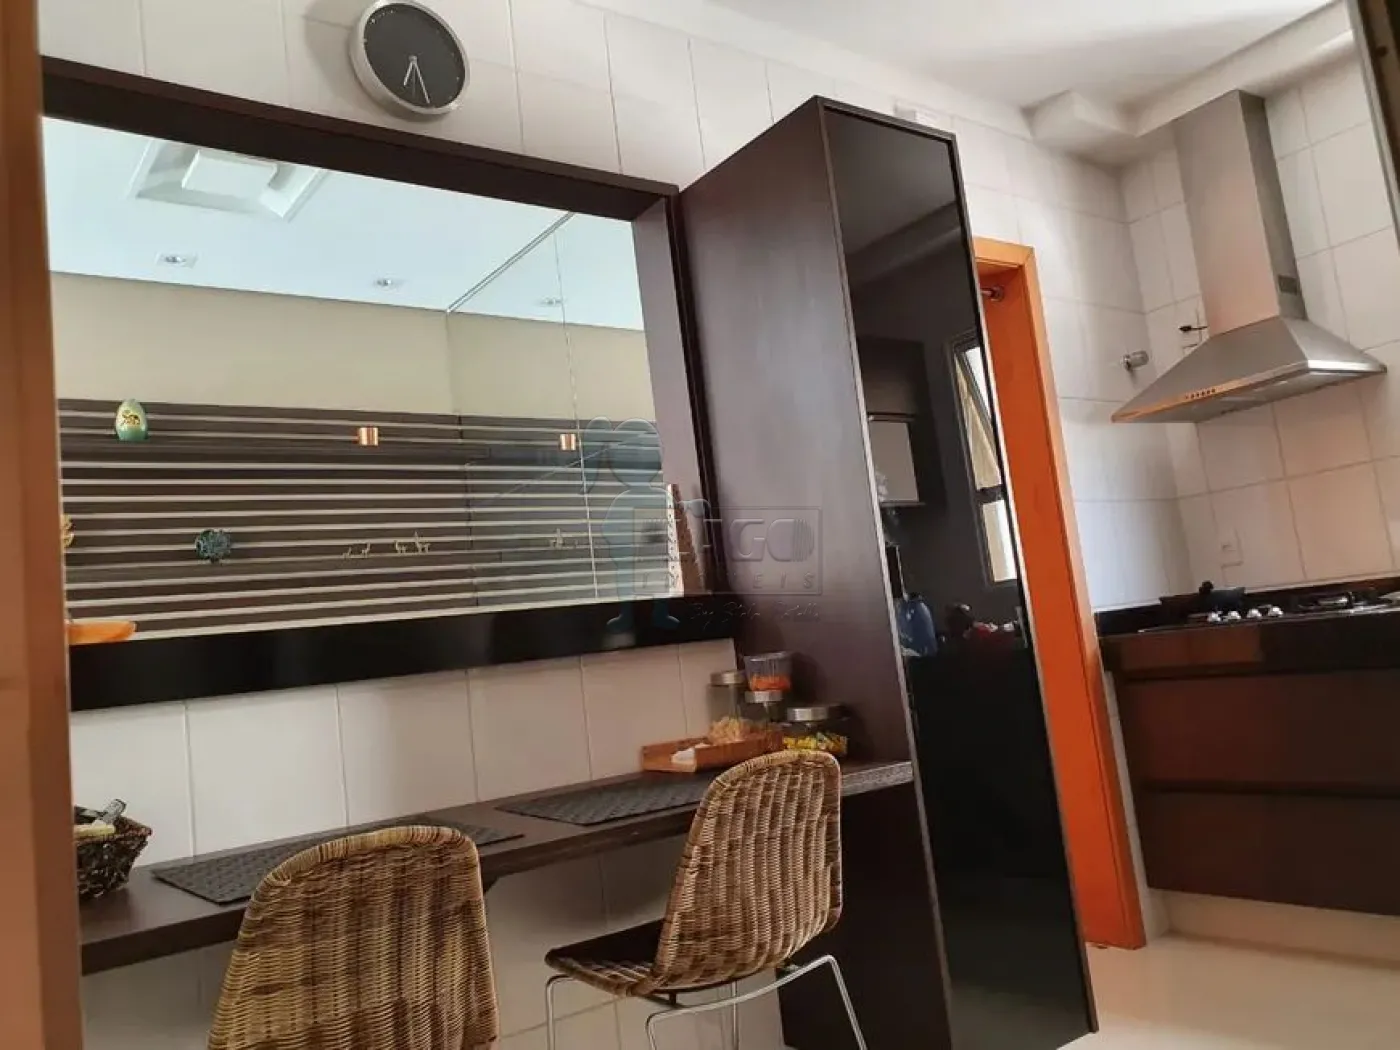 Comprar Apartamentos / Padrão em Ribeirão Preto R$ 990.000,00 - Foto 8